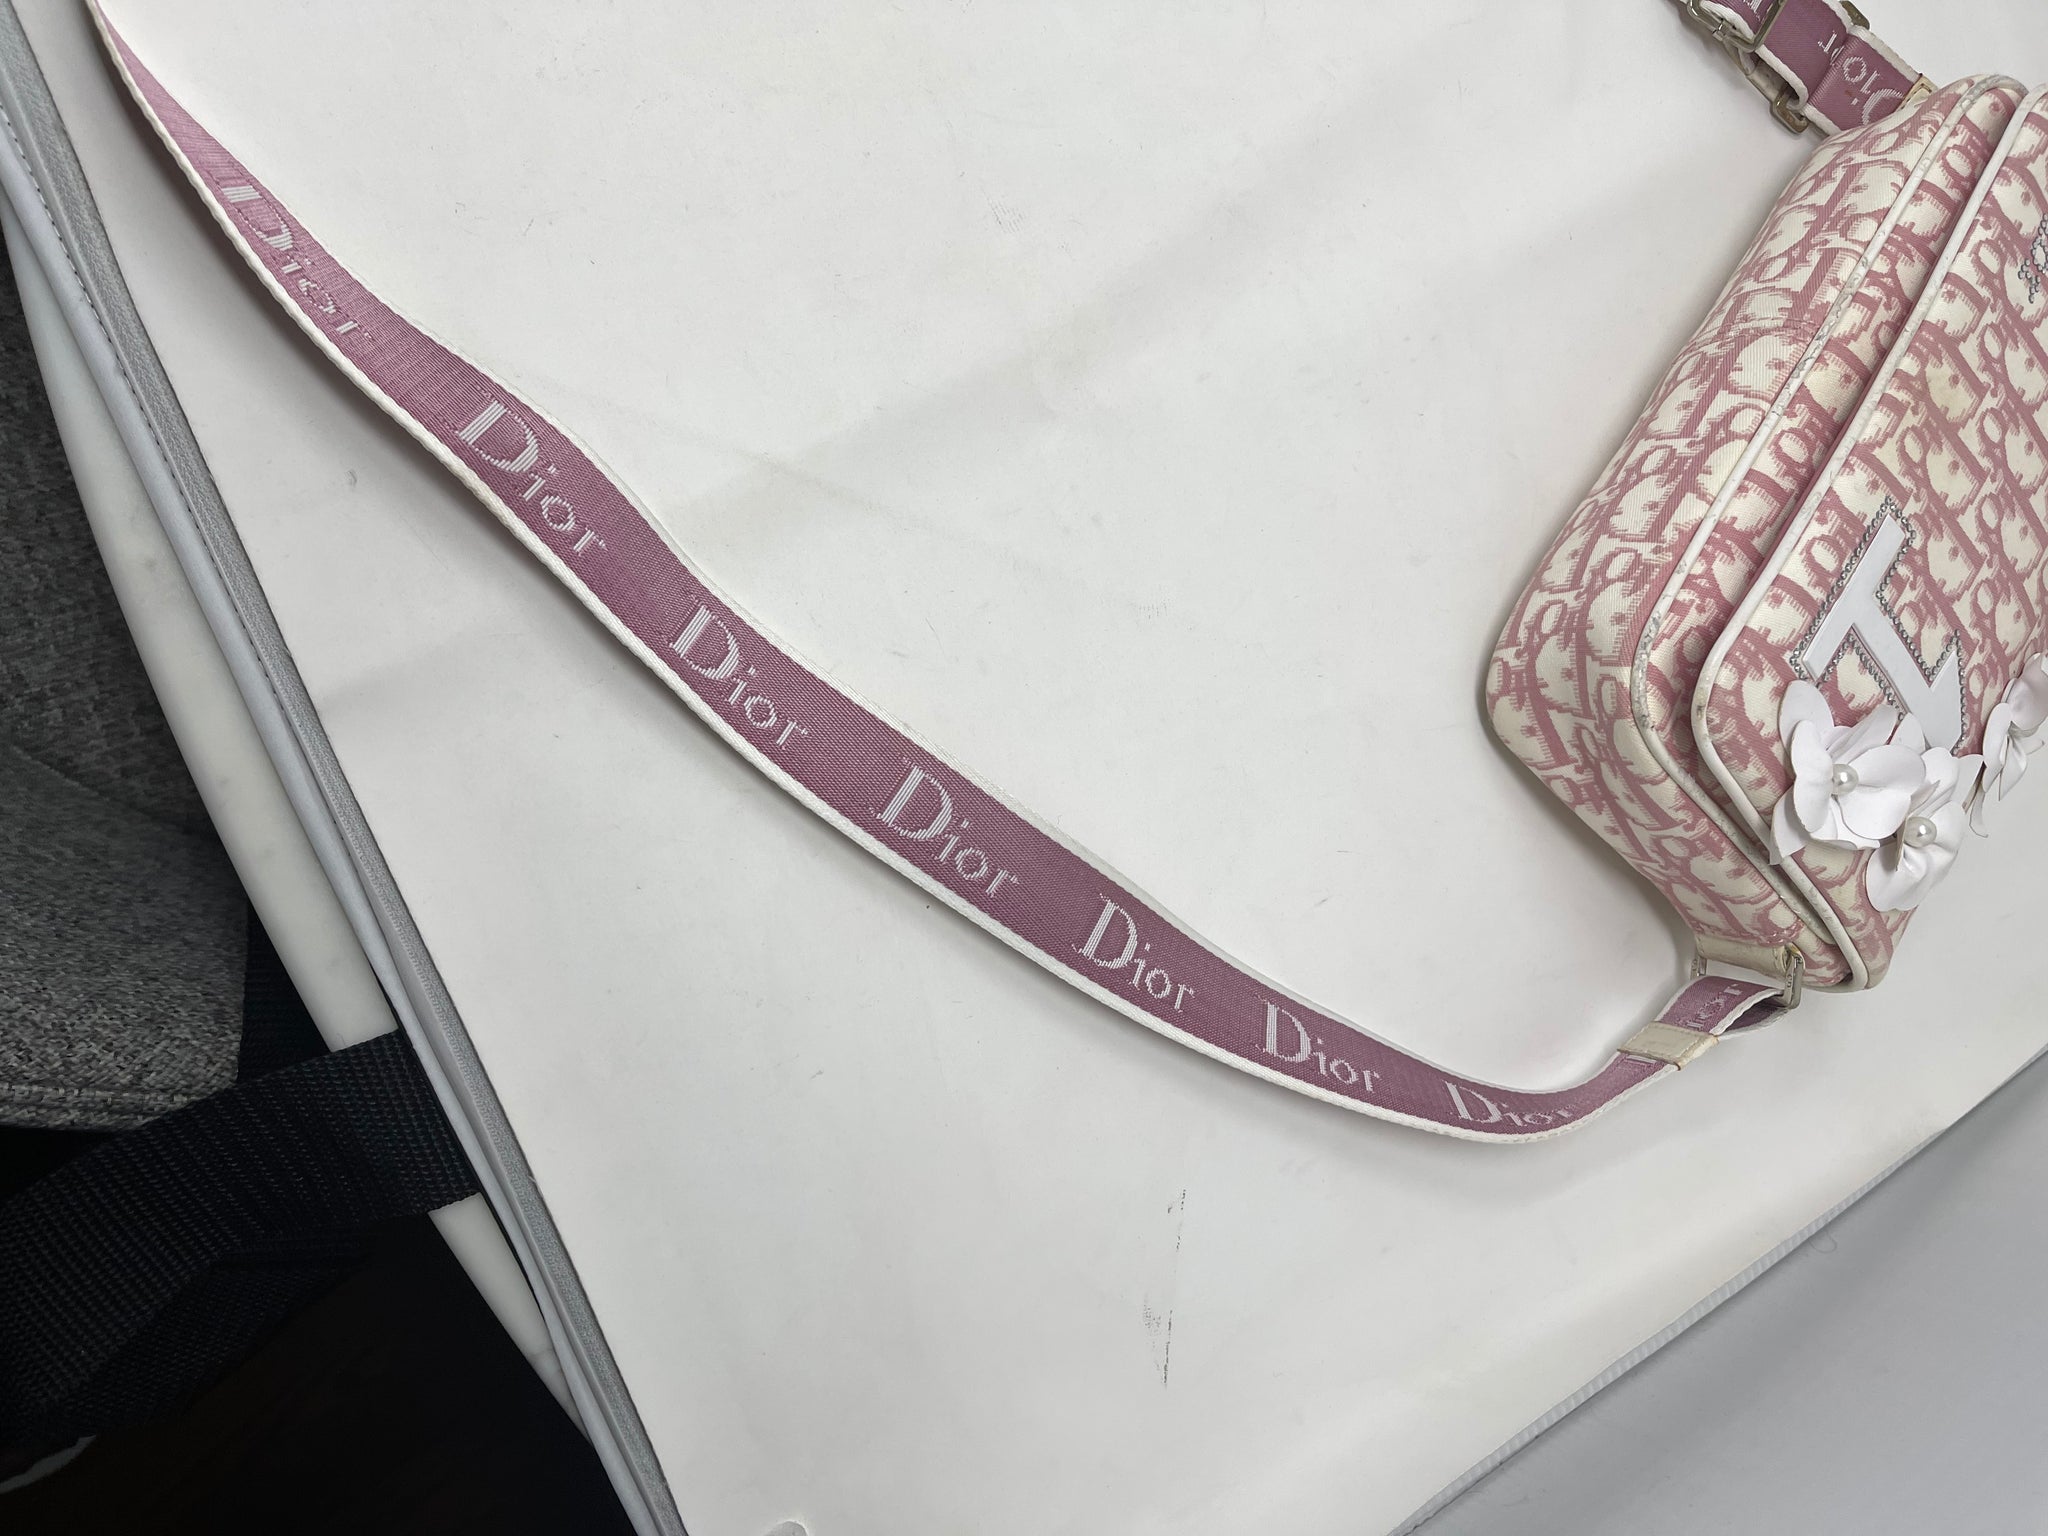 Vintage Christian Dior pink oblique monogram trotter handbag for